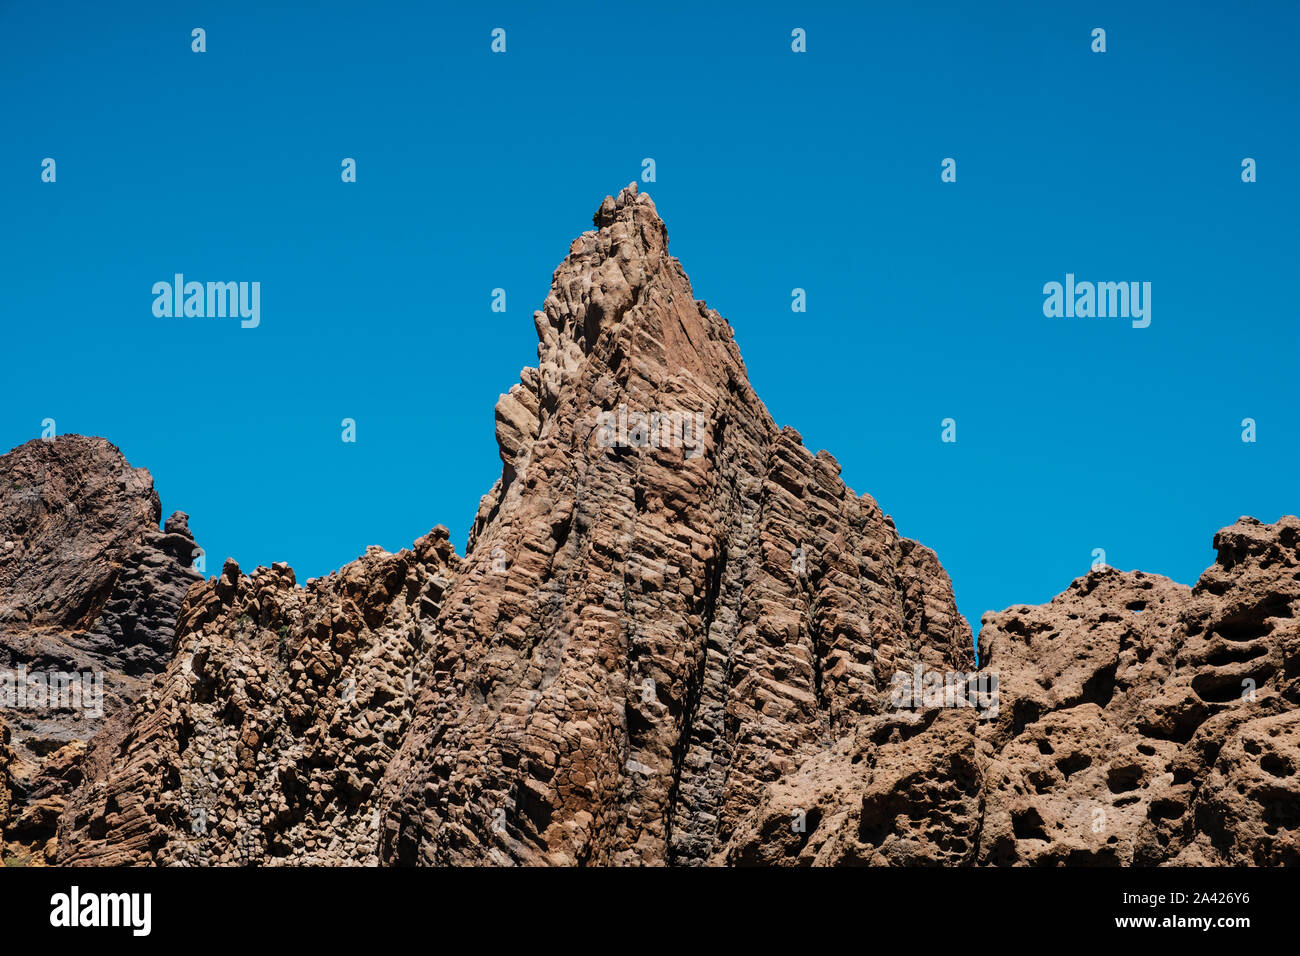 La roccia vulcanica , a strati di roccia vulcanica nel deserto con paesaggio di montagna e cielo blu Foto Stock